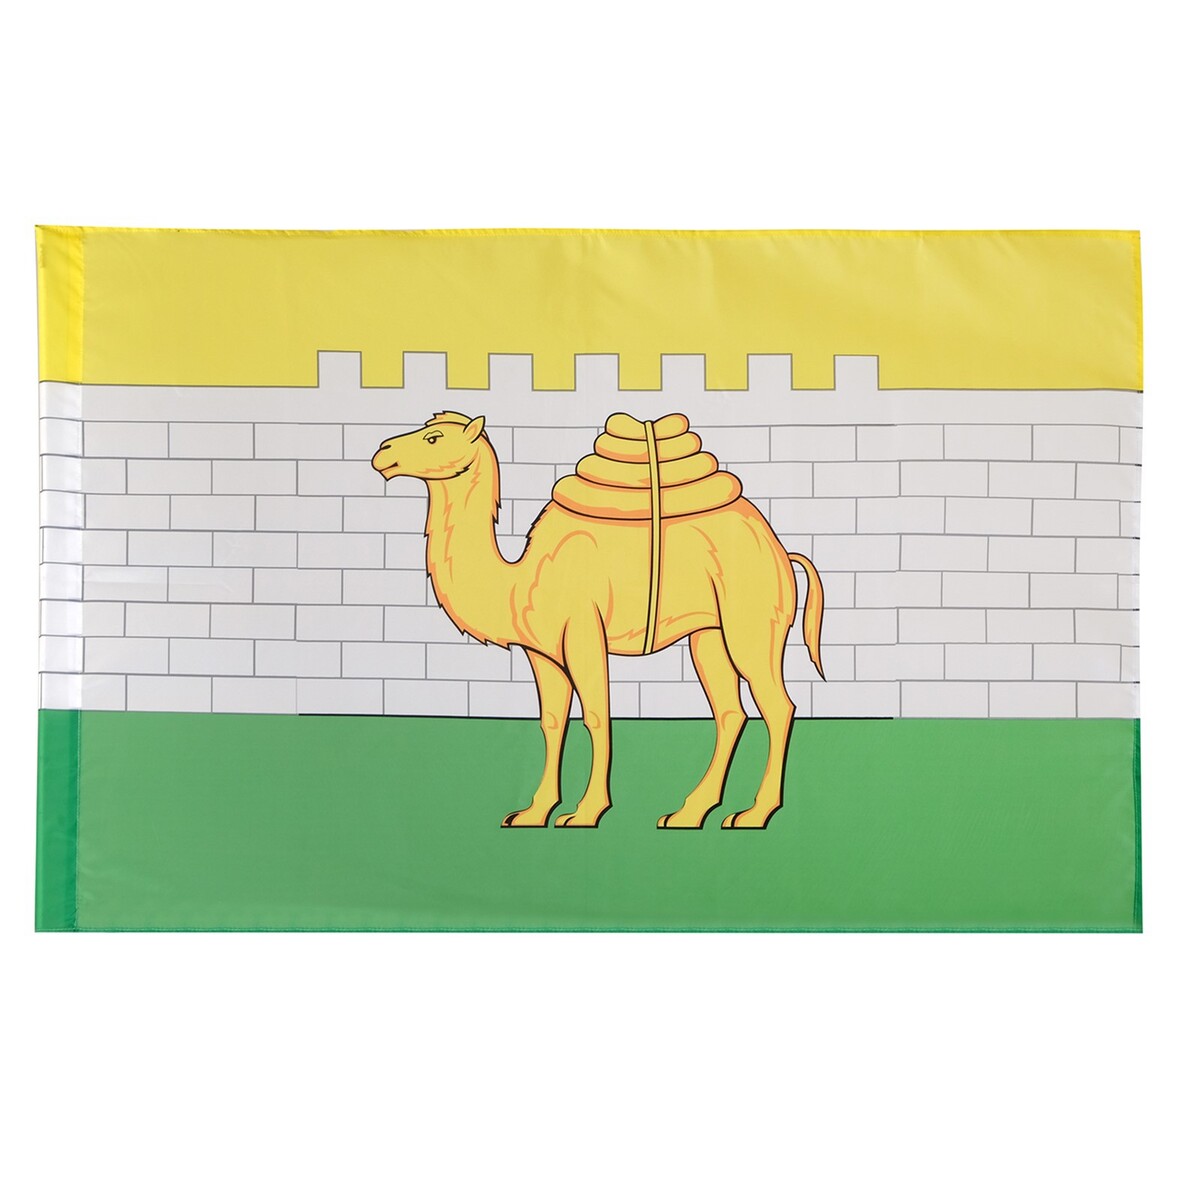 Флаг города челябинска, 90 х 135 см, полиэфирный шелк, без древка ияфиопика или засыпанные города 18 бренер